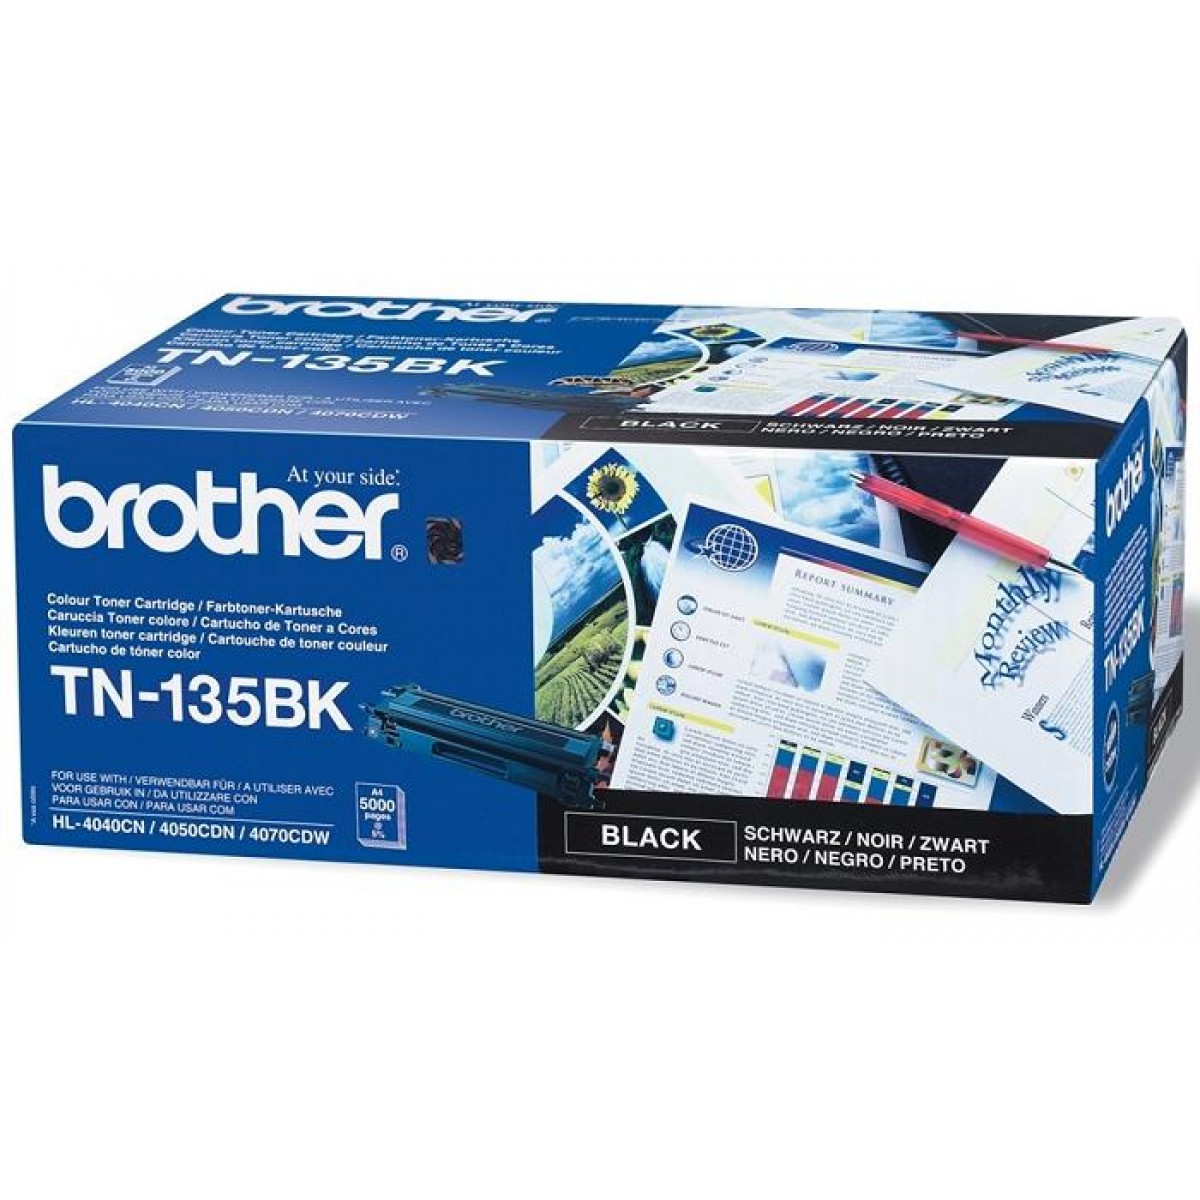 Картридж Brother TN-135BK оригинальный чёрный для принтеров HL-4040CN | HL-4050CDN | HL-4070CDW